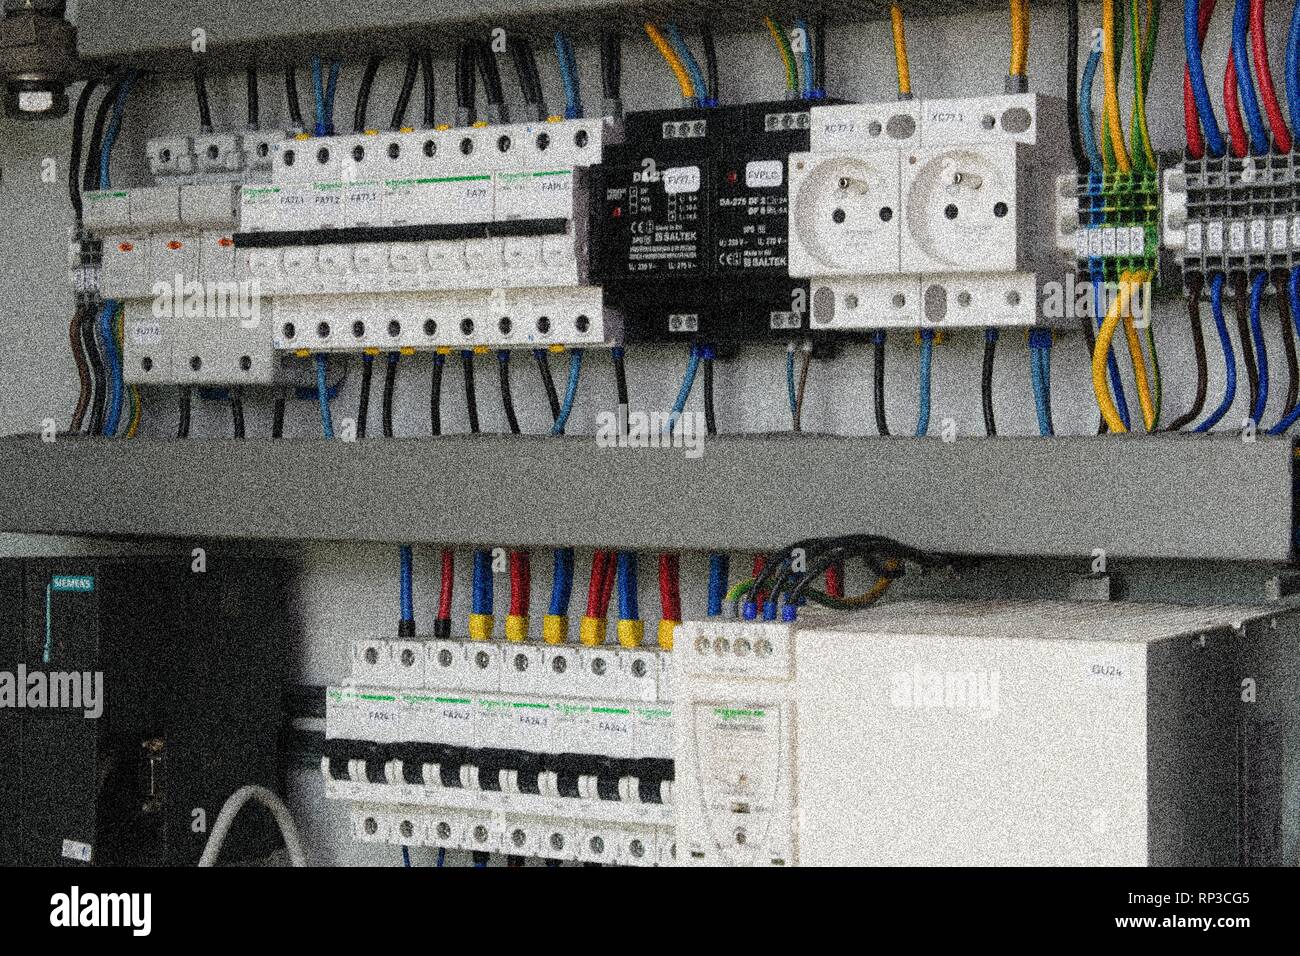 Stromkreis Schalter und Steckdosen in einem elektrischen